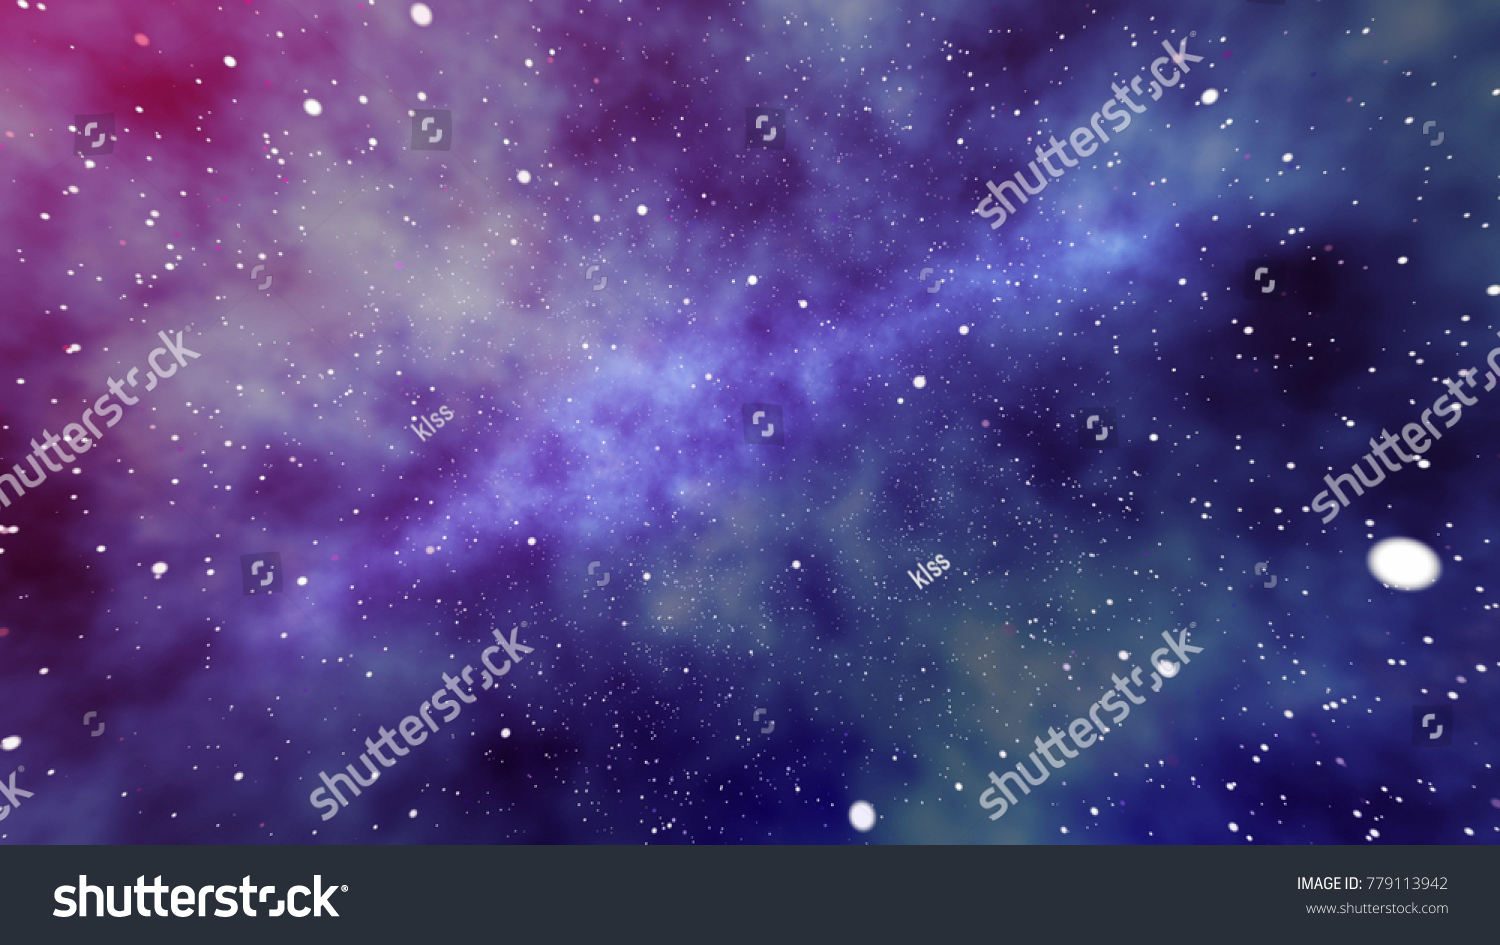 紫 青 黒の背景に 宇宙の星と惑星の巨大な星雲の未来的な3dレンダリング 何匹かの巨大星が一つになり 大きな斑点のように輝く のイラスト素材